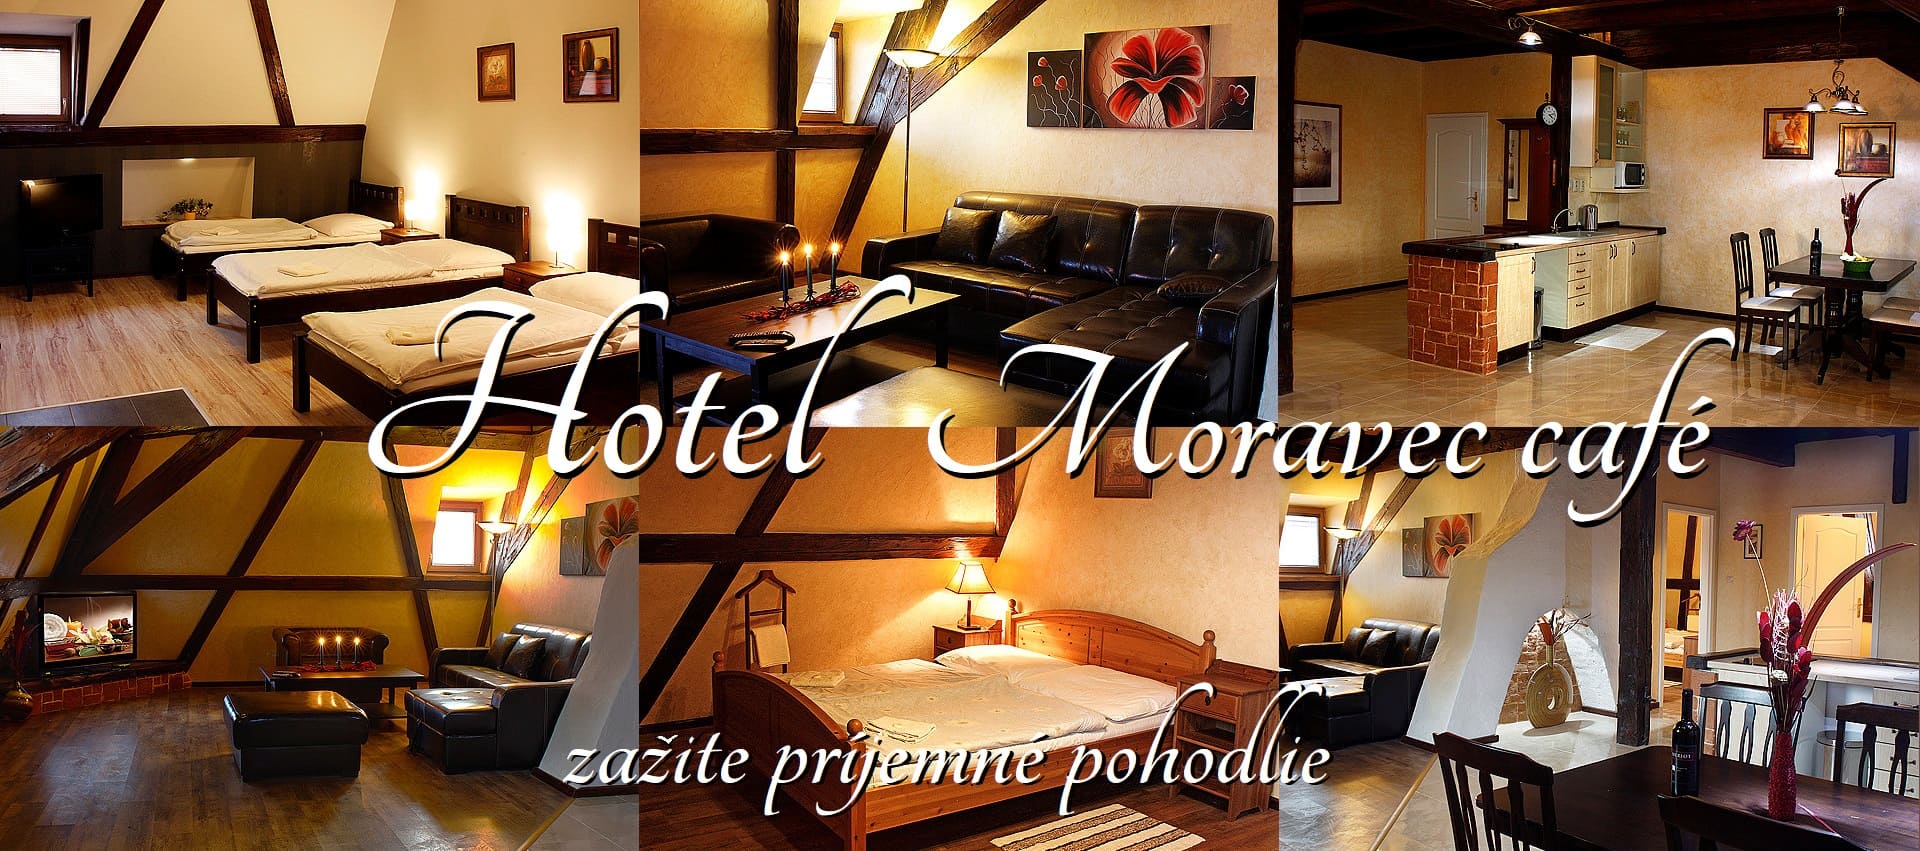 Hotel Moravec café